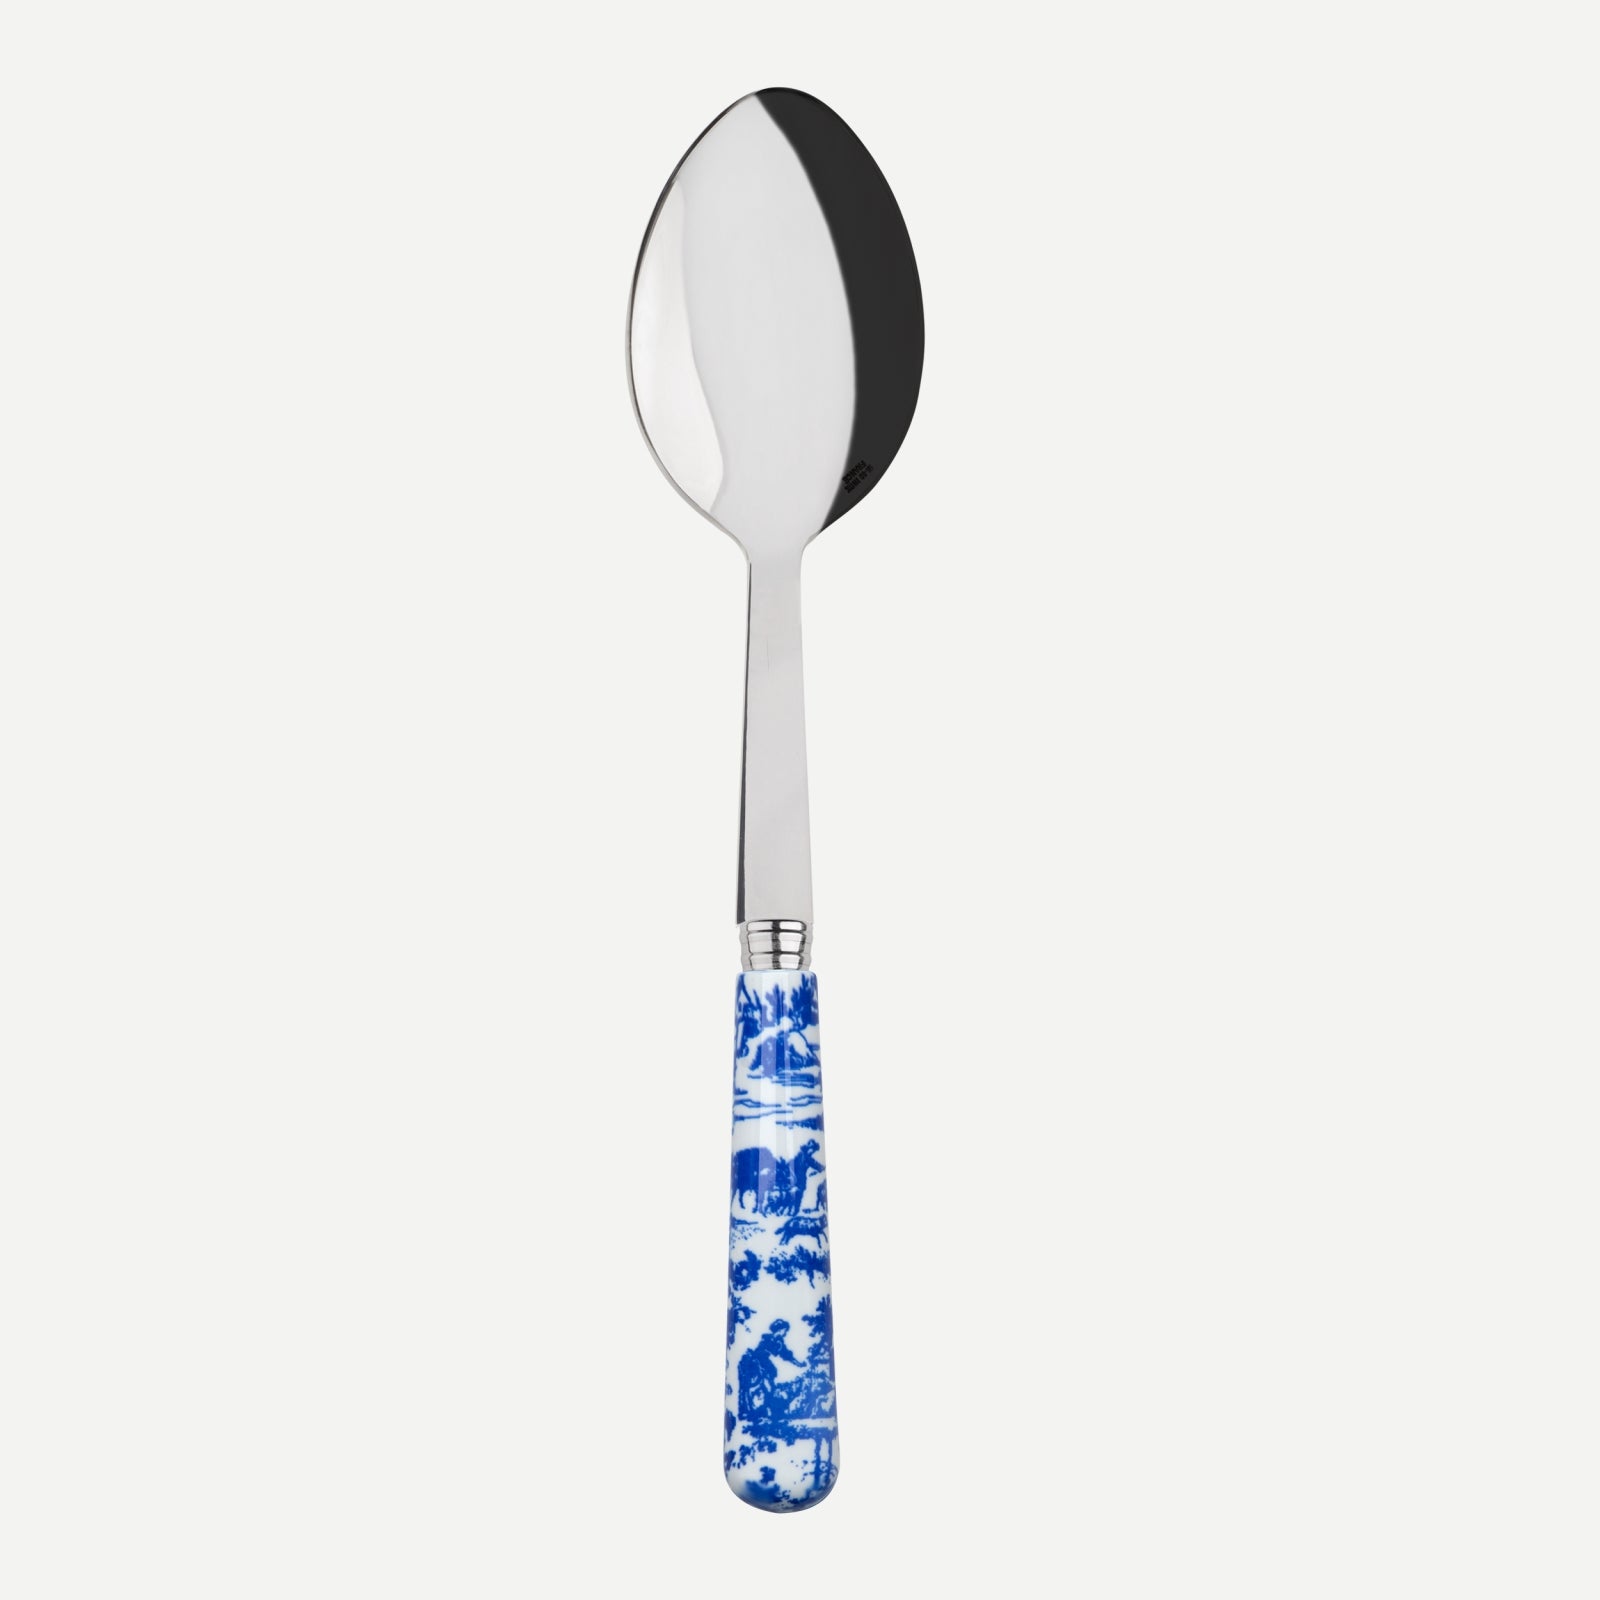 Serving spoon - toile de jouy - Blue